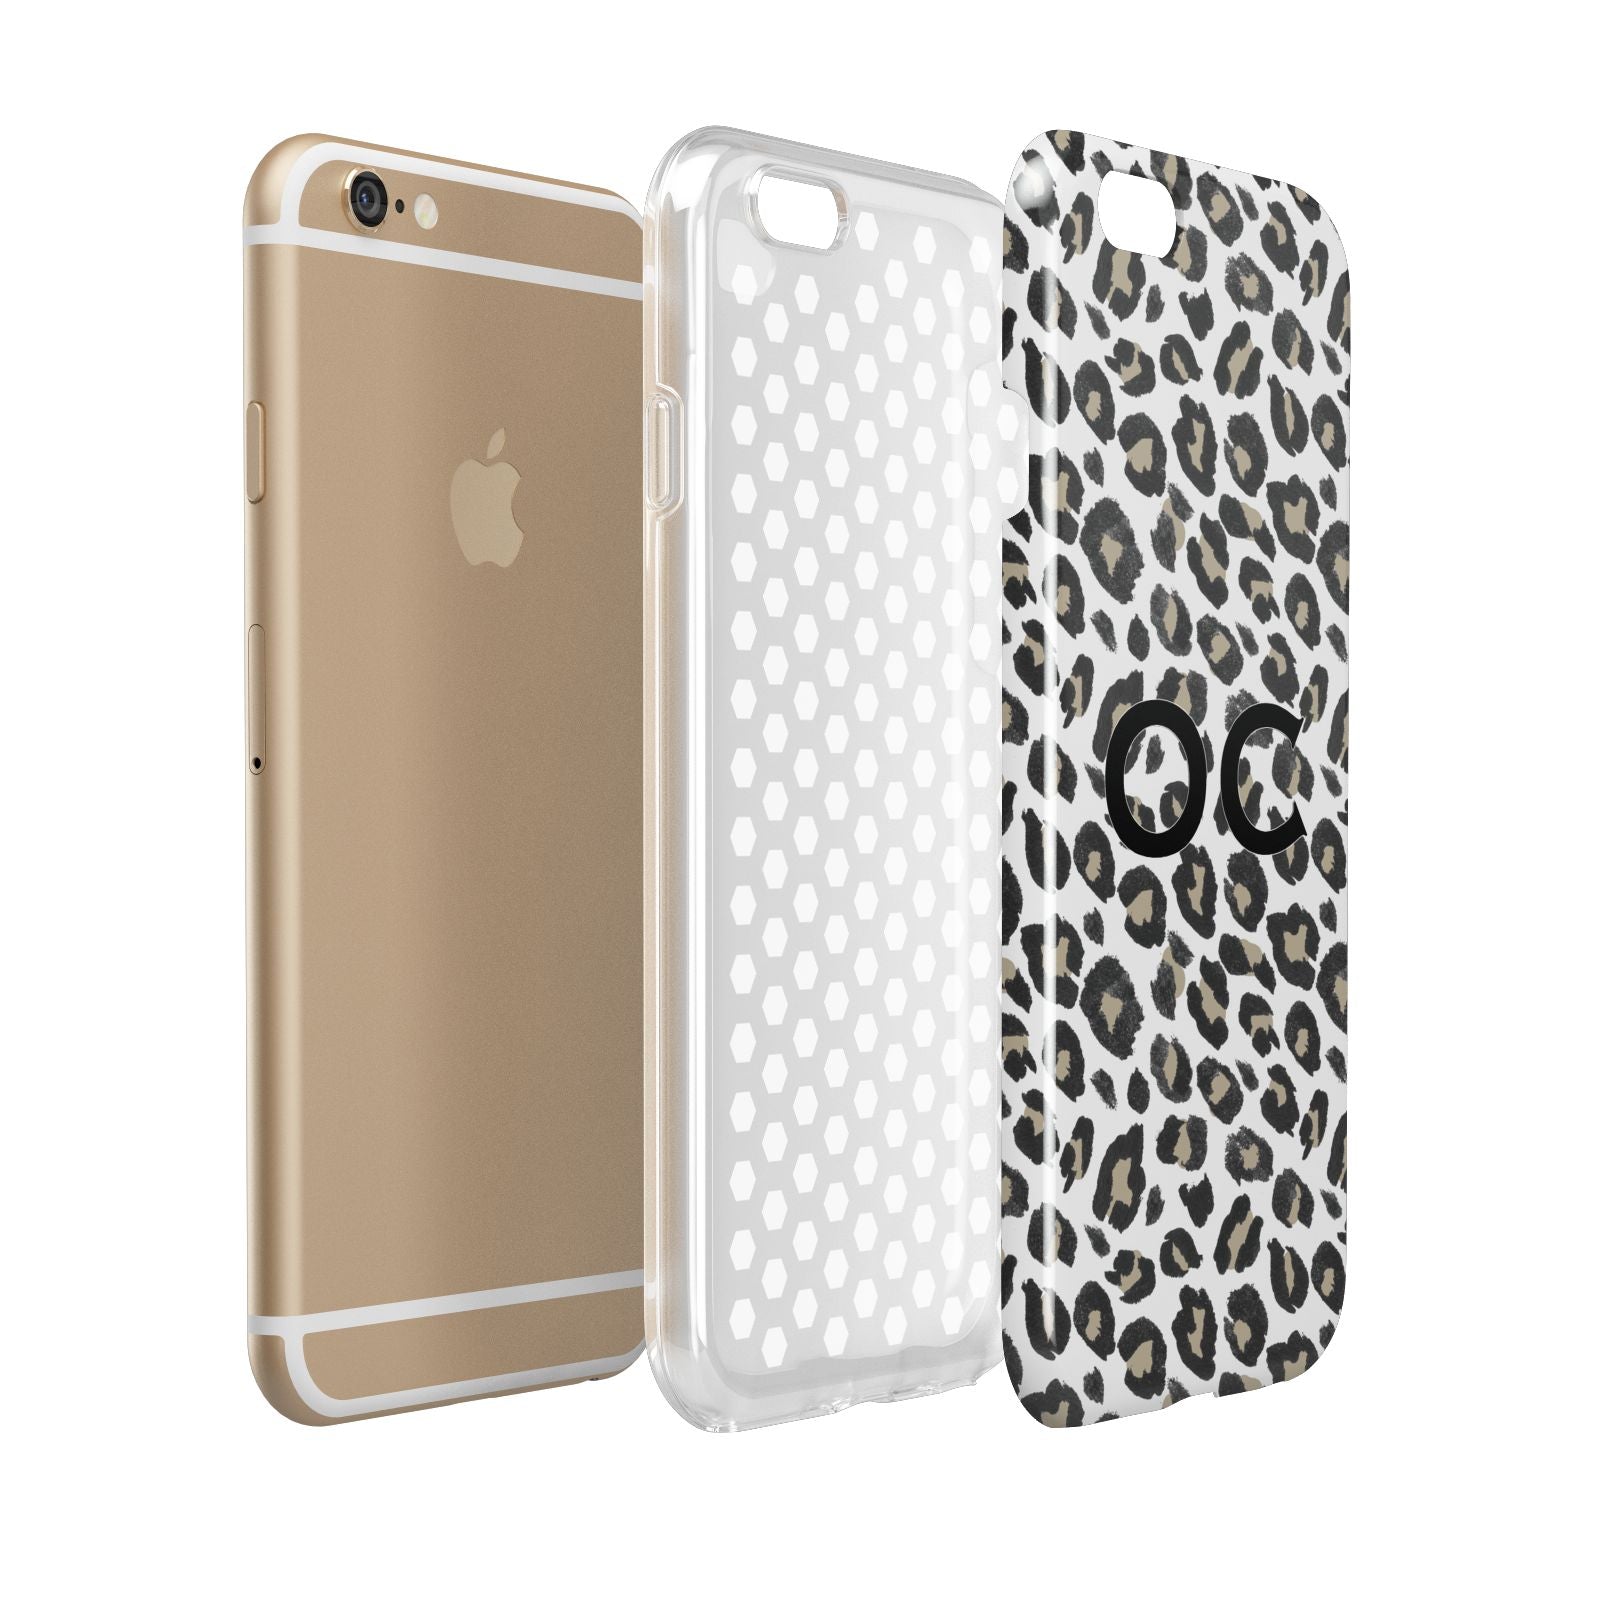 Tan Leopard Print Pattern Apple iPhone 6 3D Tough Case Expanded view